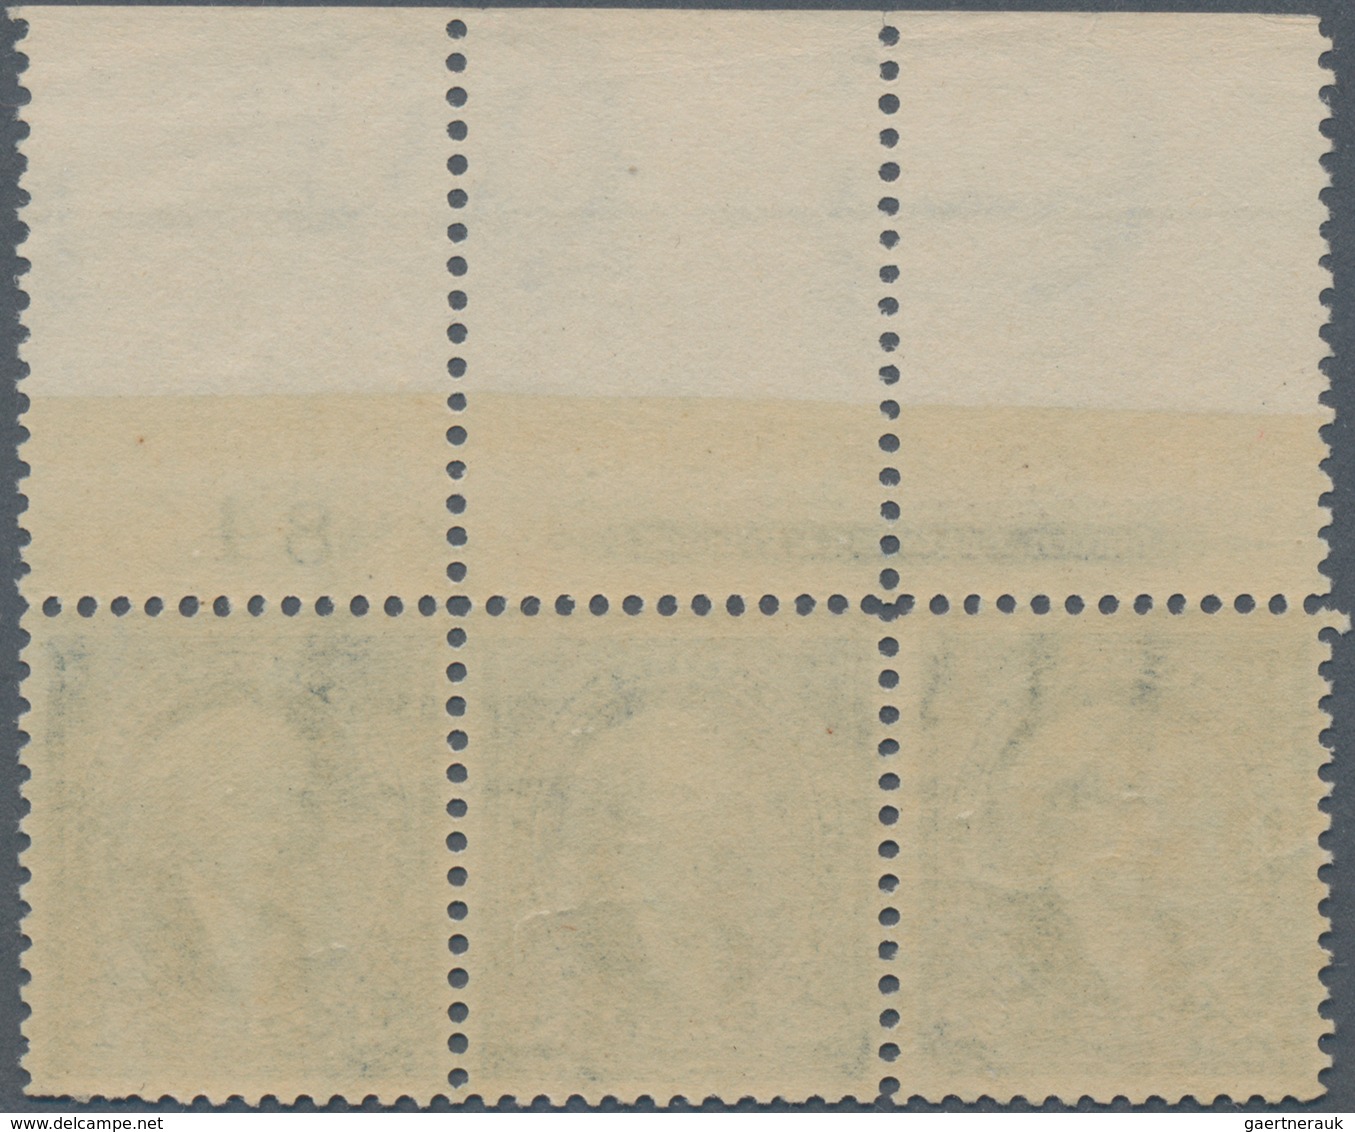 Vereinigte Staaten Von Amerika: $2.00 1895 Watermarked (Scott 277), Mint Full Top Plate No. 84 And I - Oblitérés